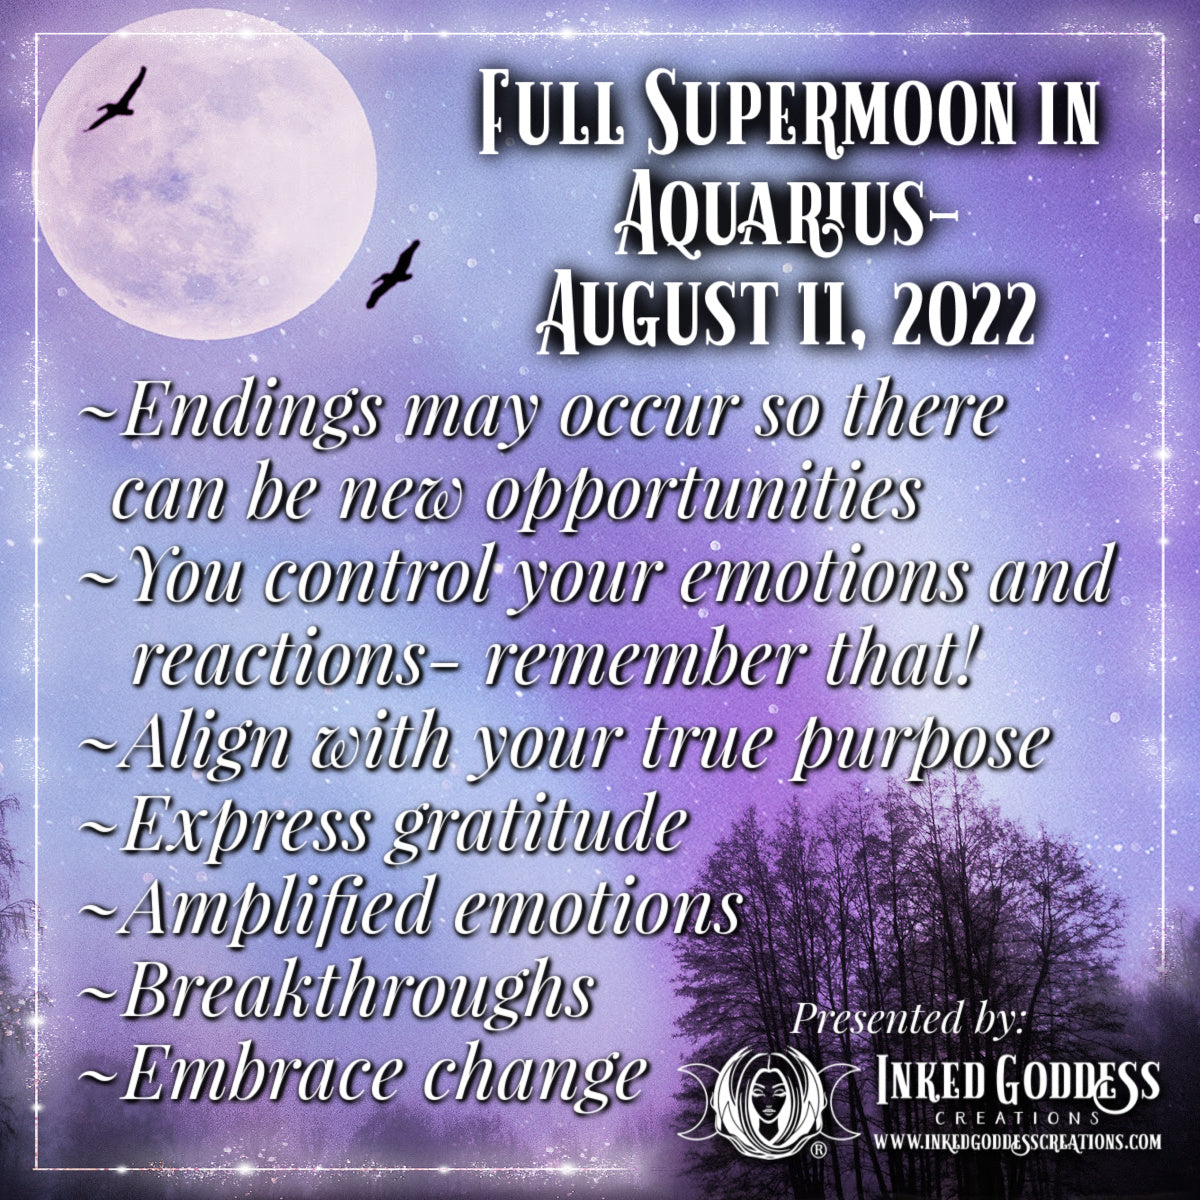 Full Supermoon in Aquarius August 11, 2022